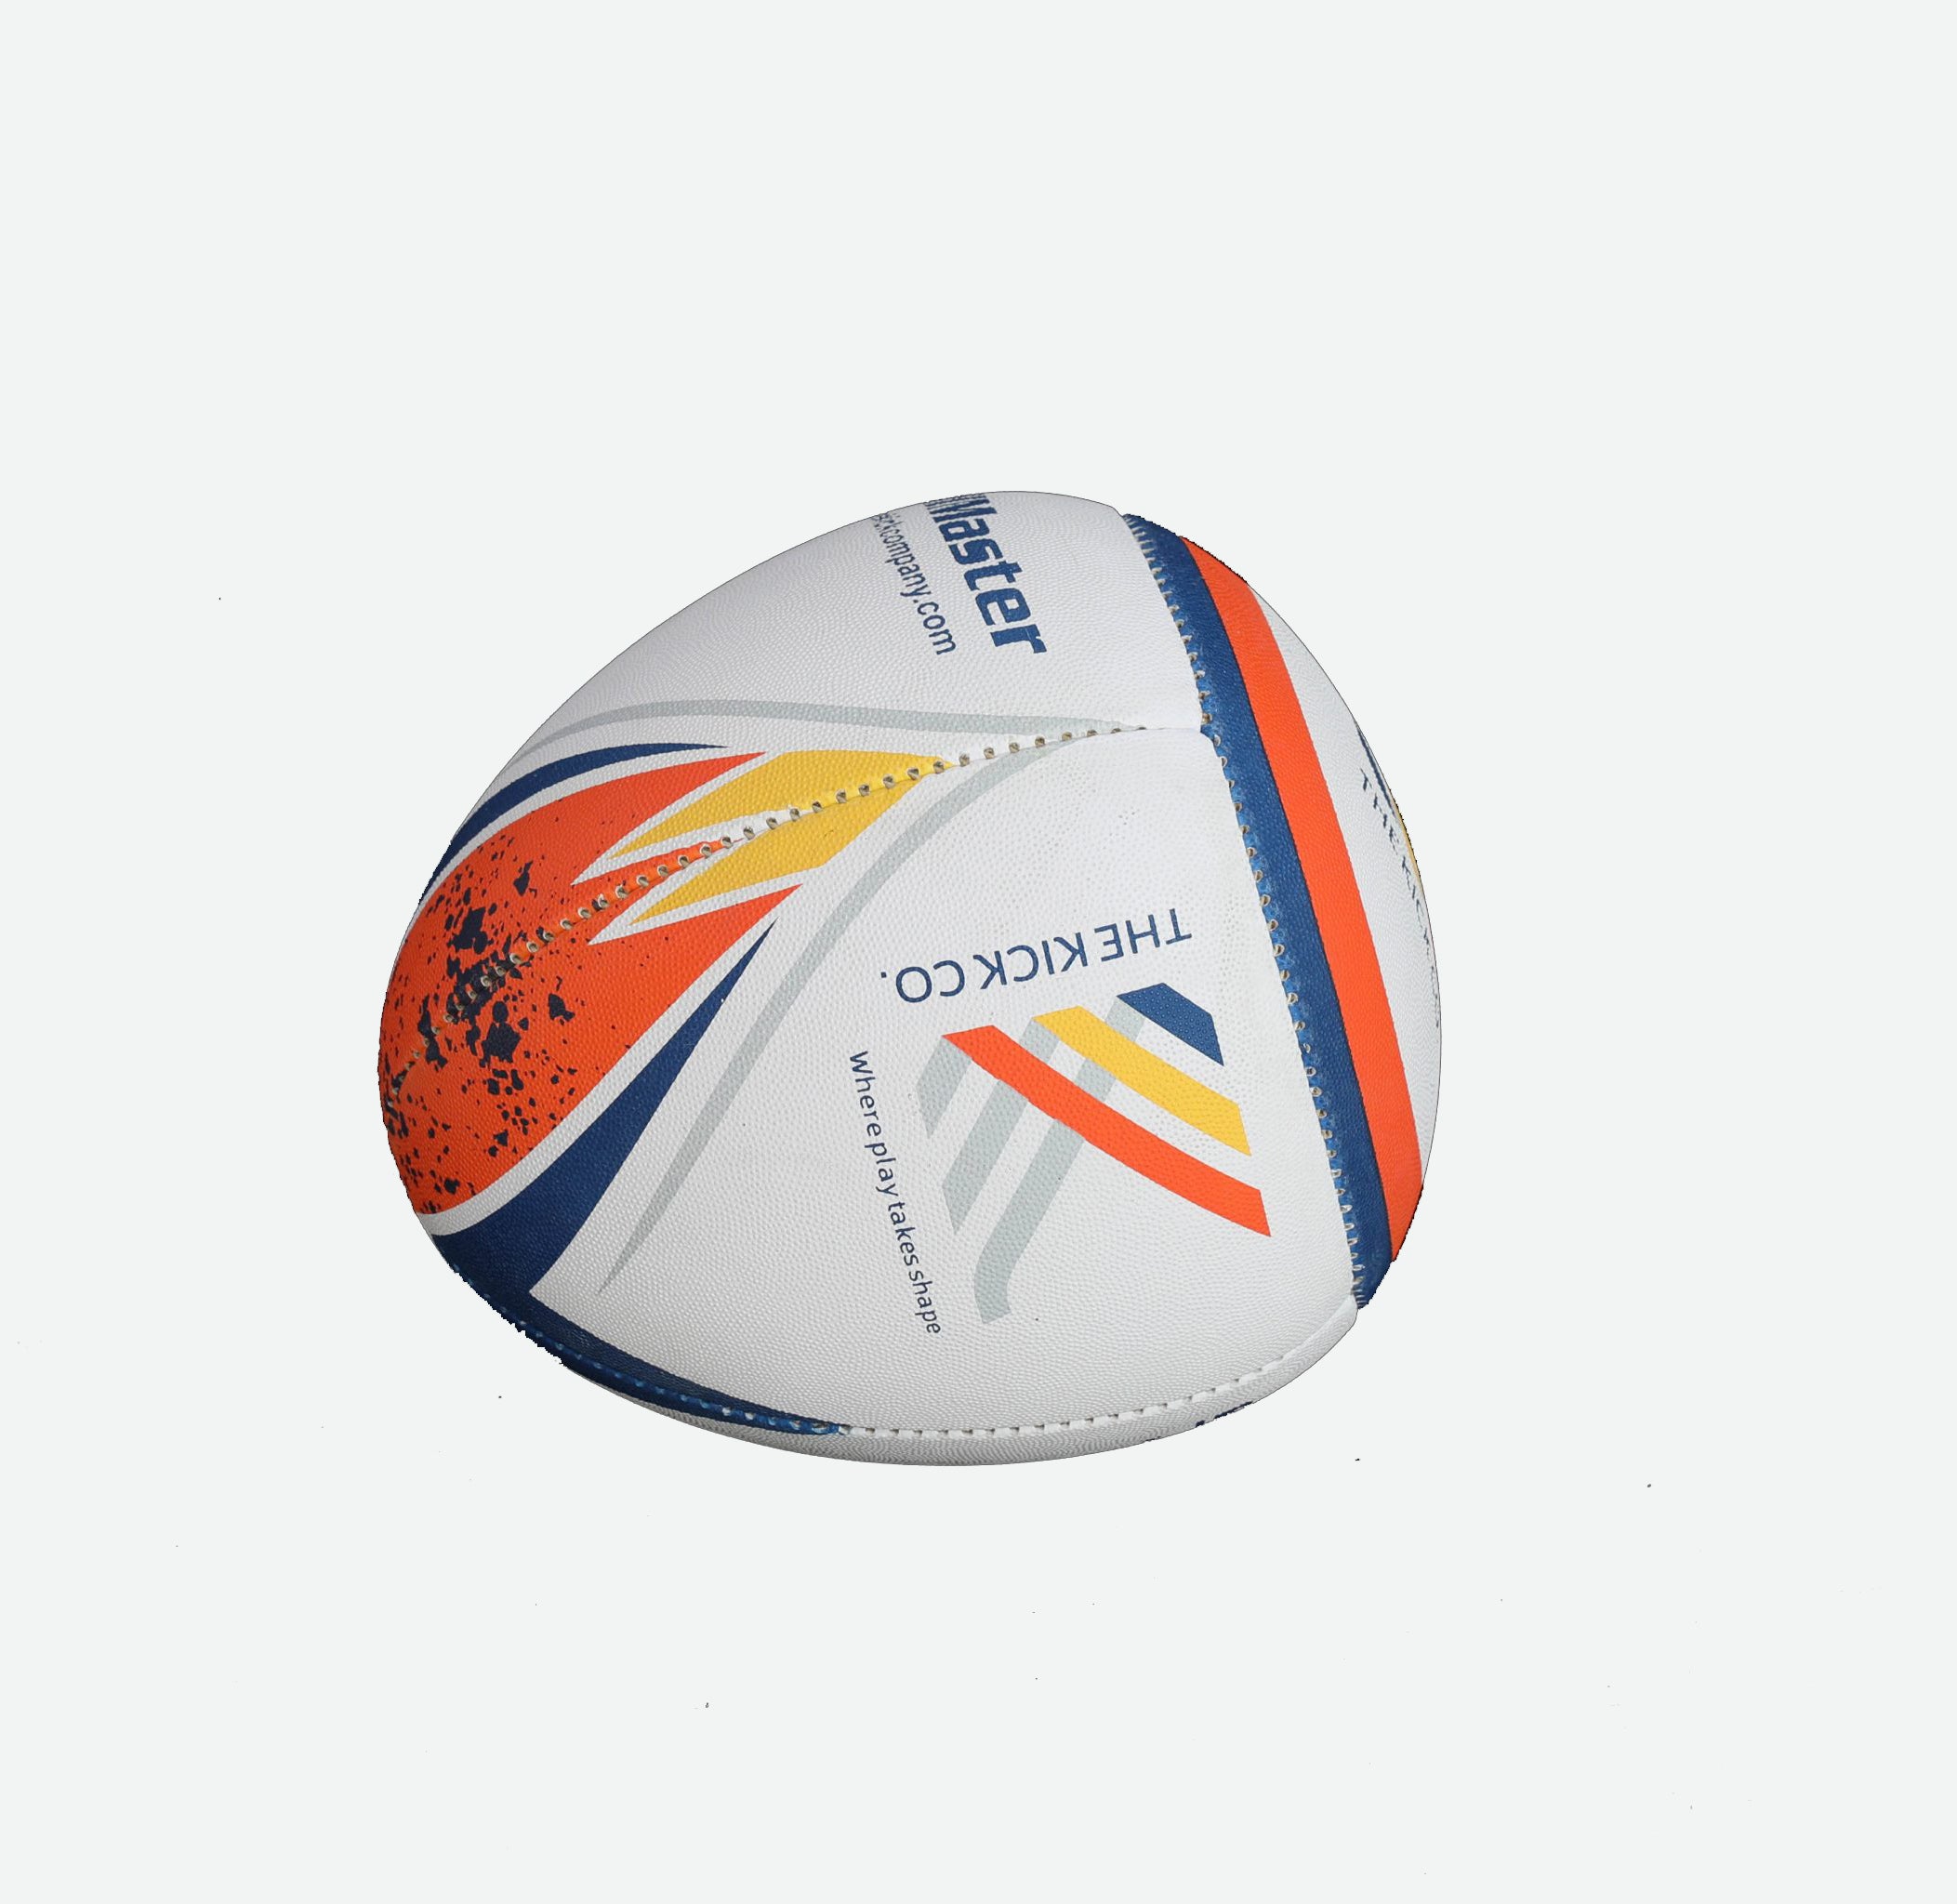 Reflex Ball (Rebounder ball)